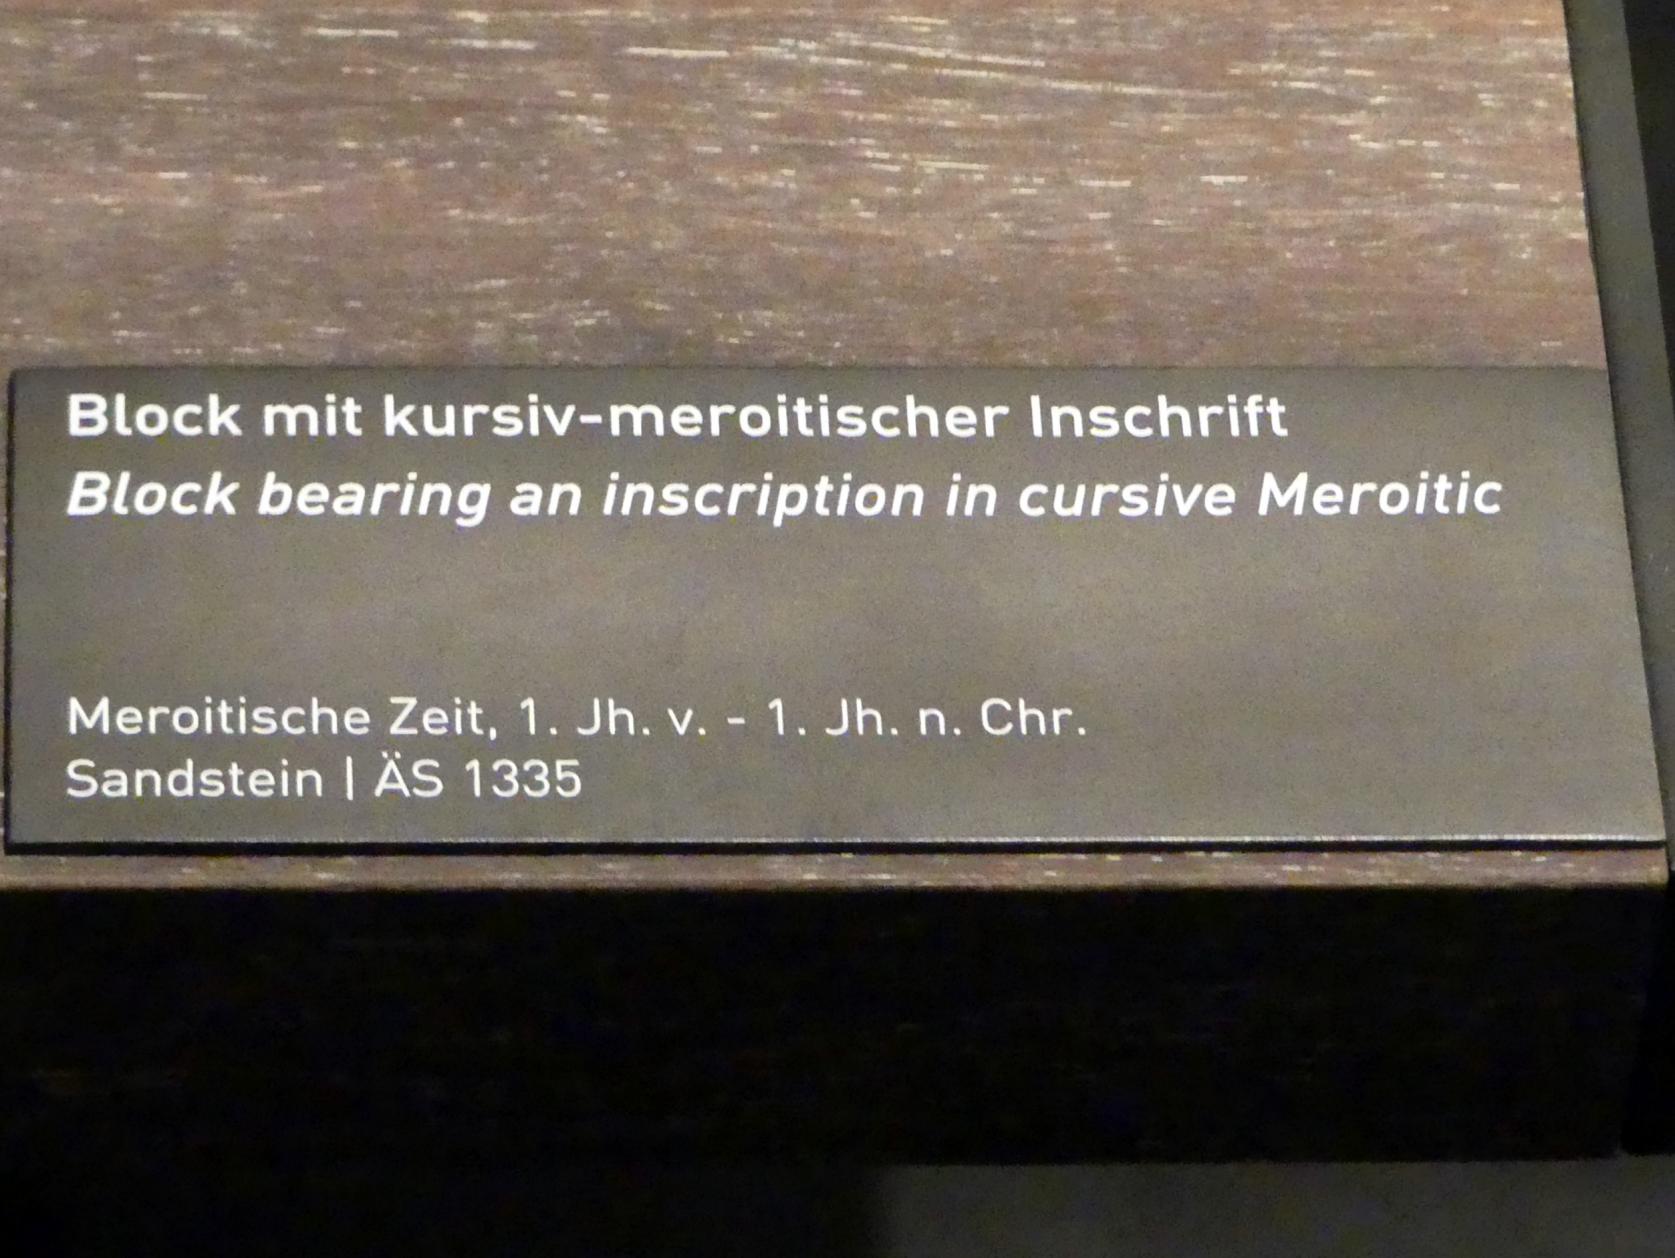 Block mit kursiv-meroitischer Inschrift, 100 v. Chr. - 100 n. Chr., Bild 2/2